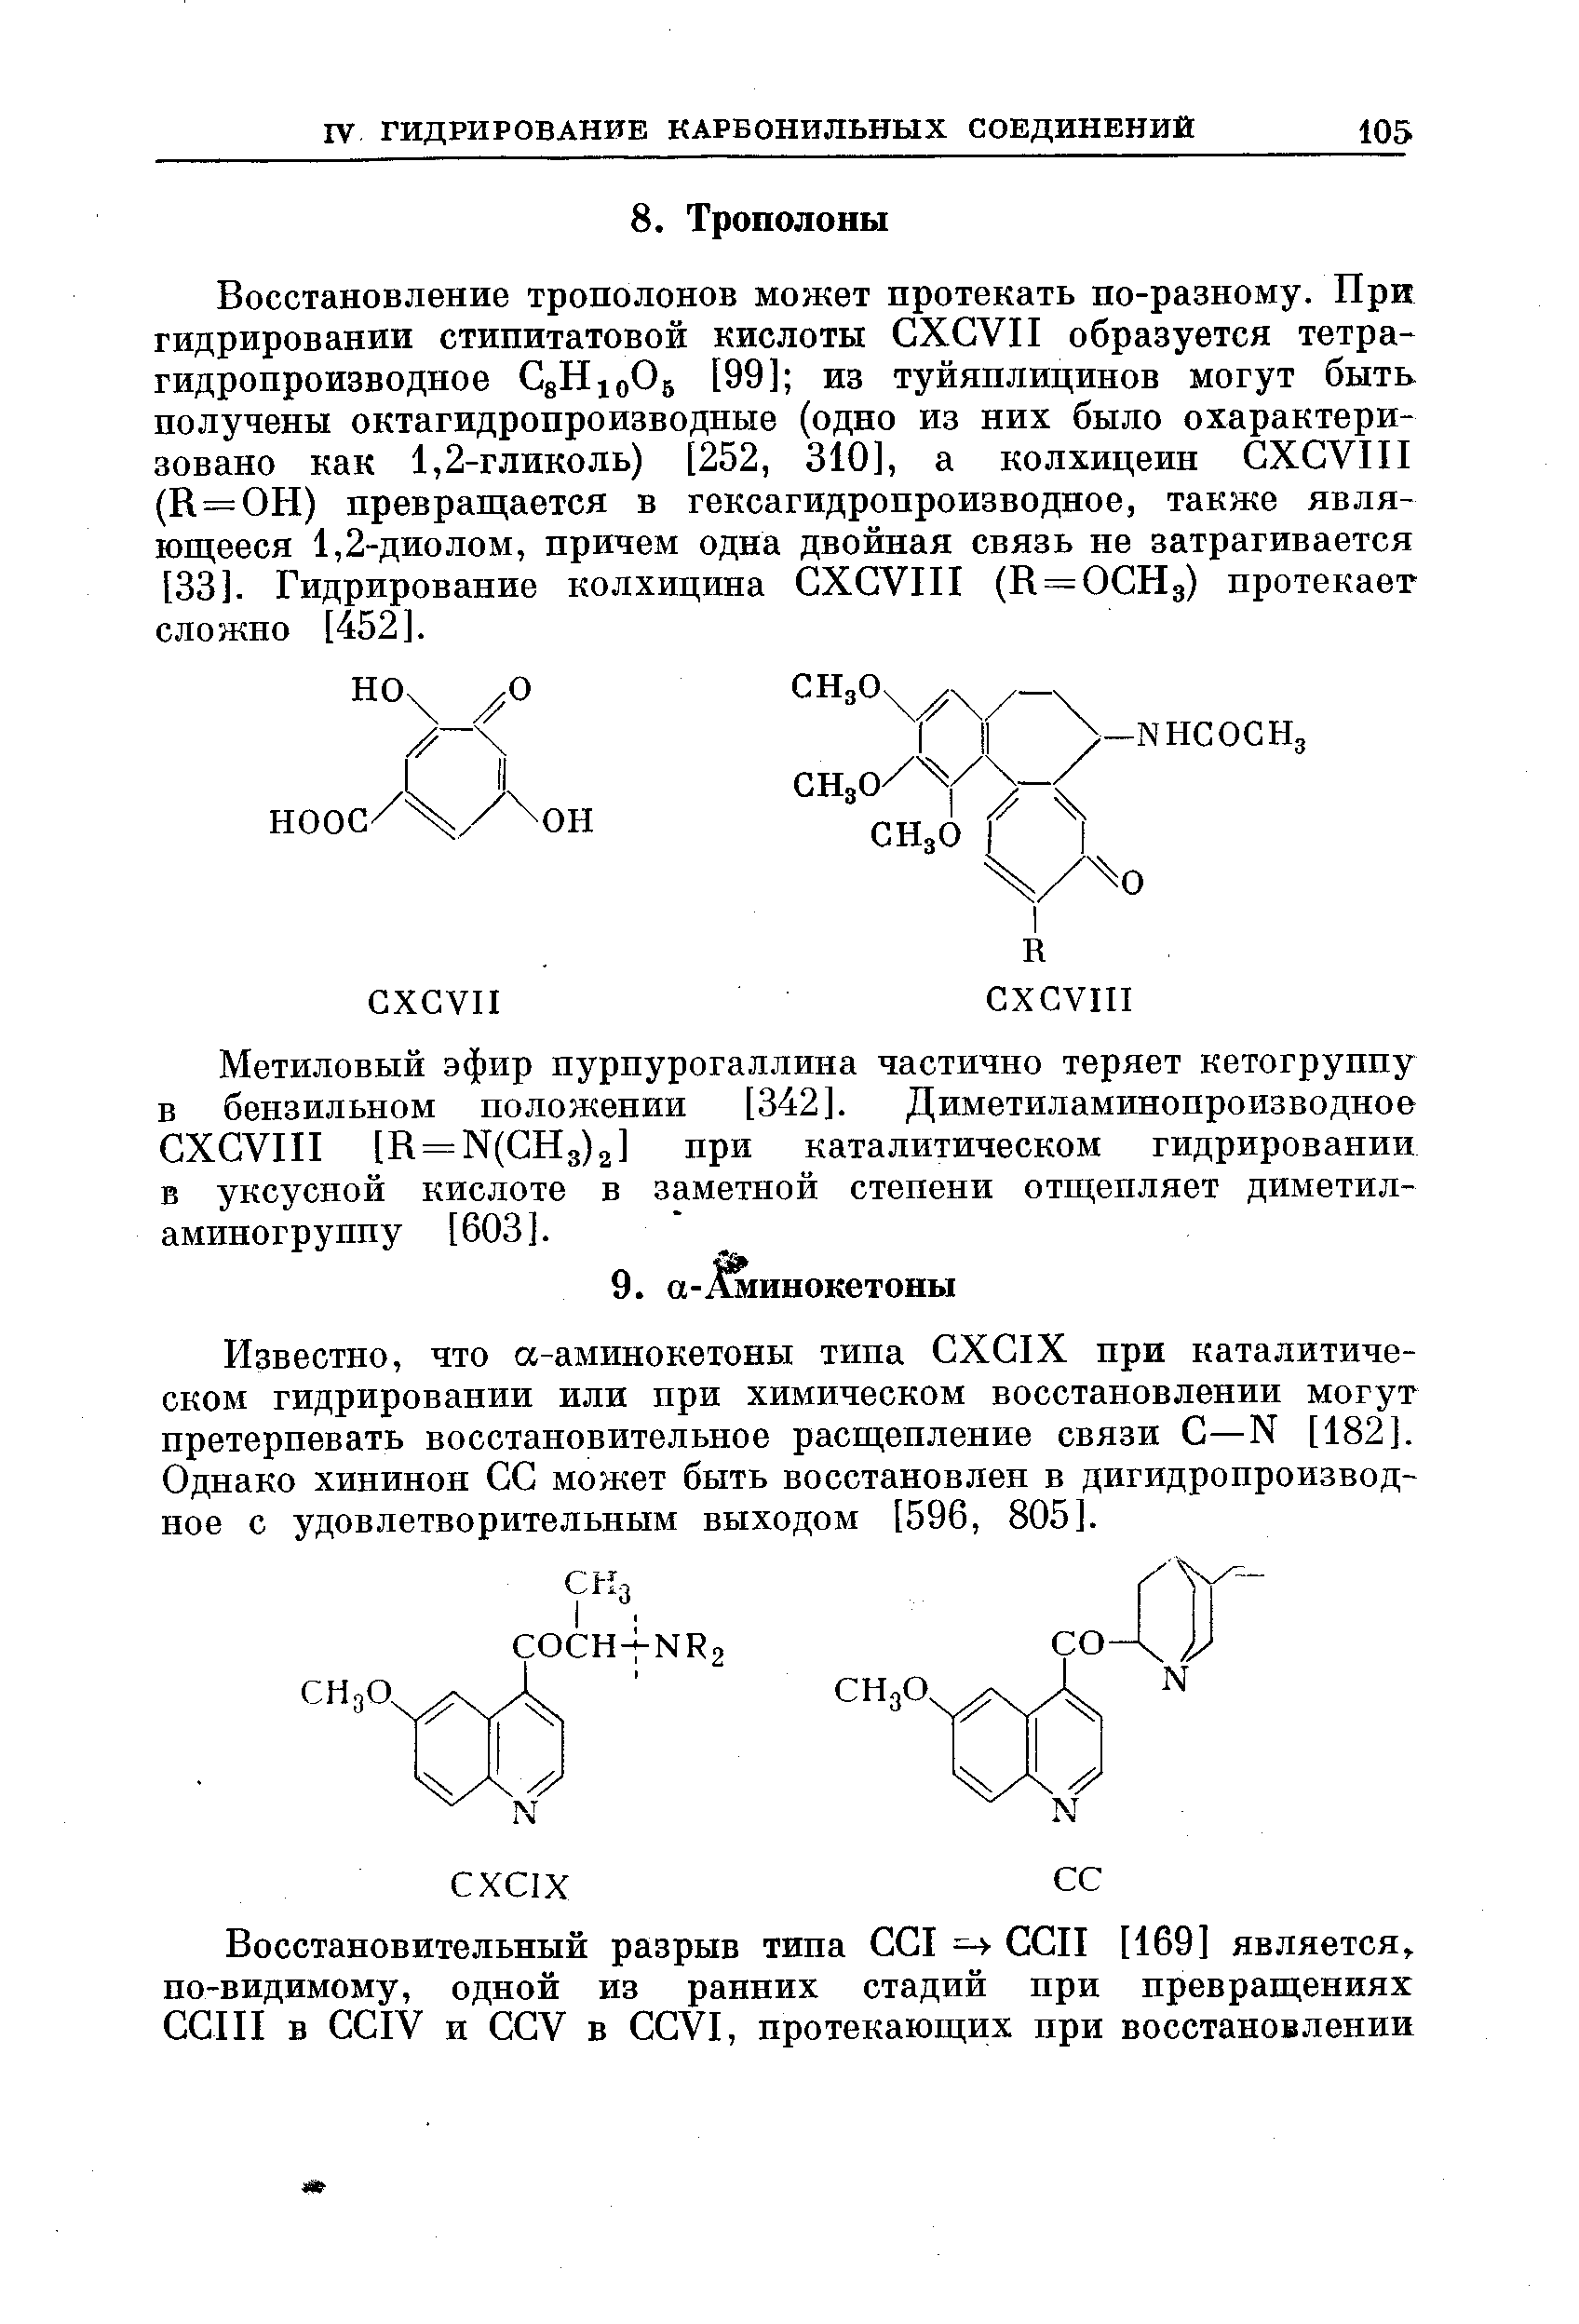 Известно, что а-аминокетоны типа GXGIX при каталитическом гидрировании или при химическом восстановлении могут претерпевать восстановительное расщепление связи G—N [182]. Однако хининон GG может быть восстановлен в дигидропроизводное с удовлетворительным выходом [596, 805].